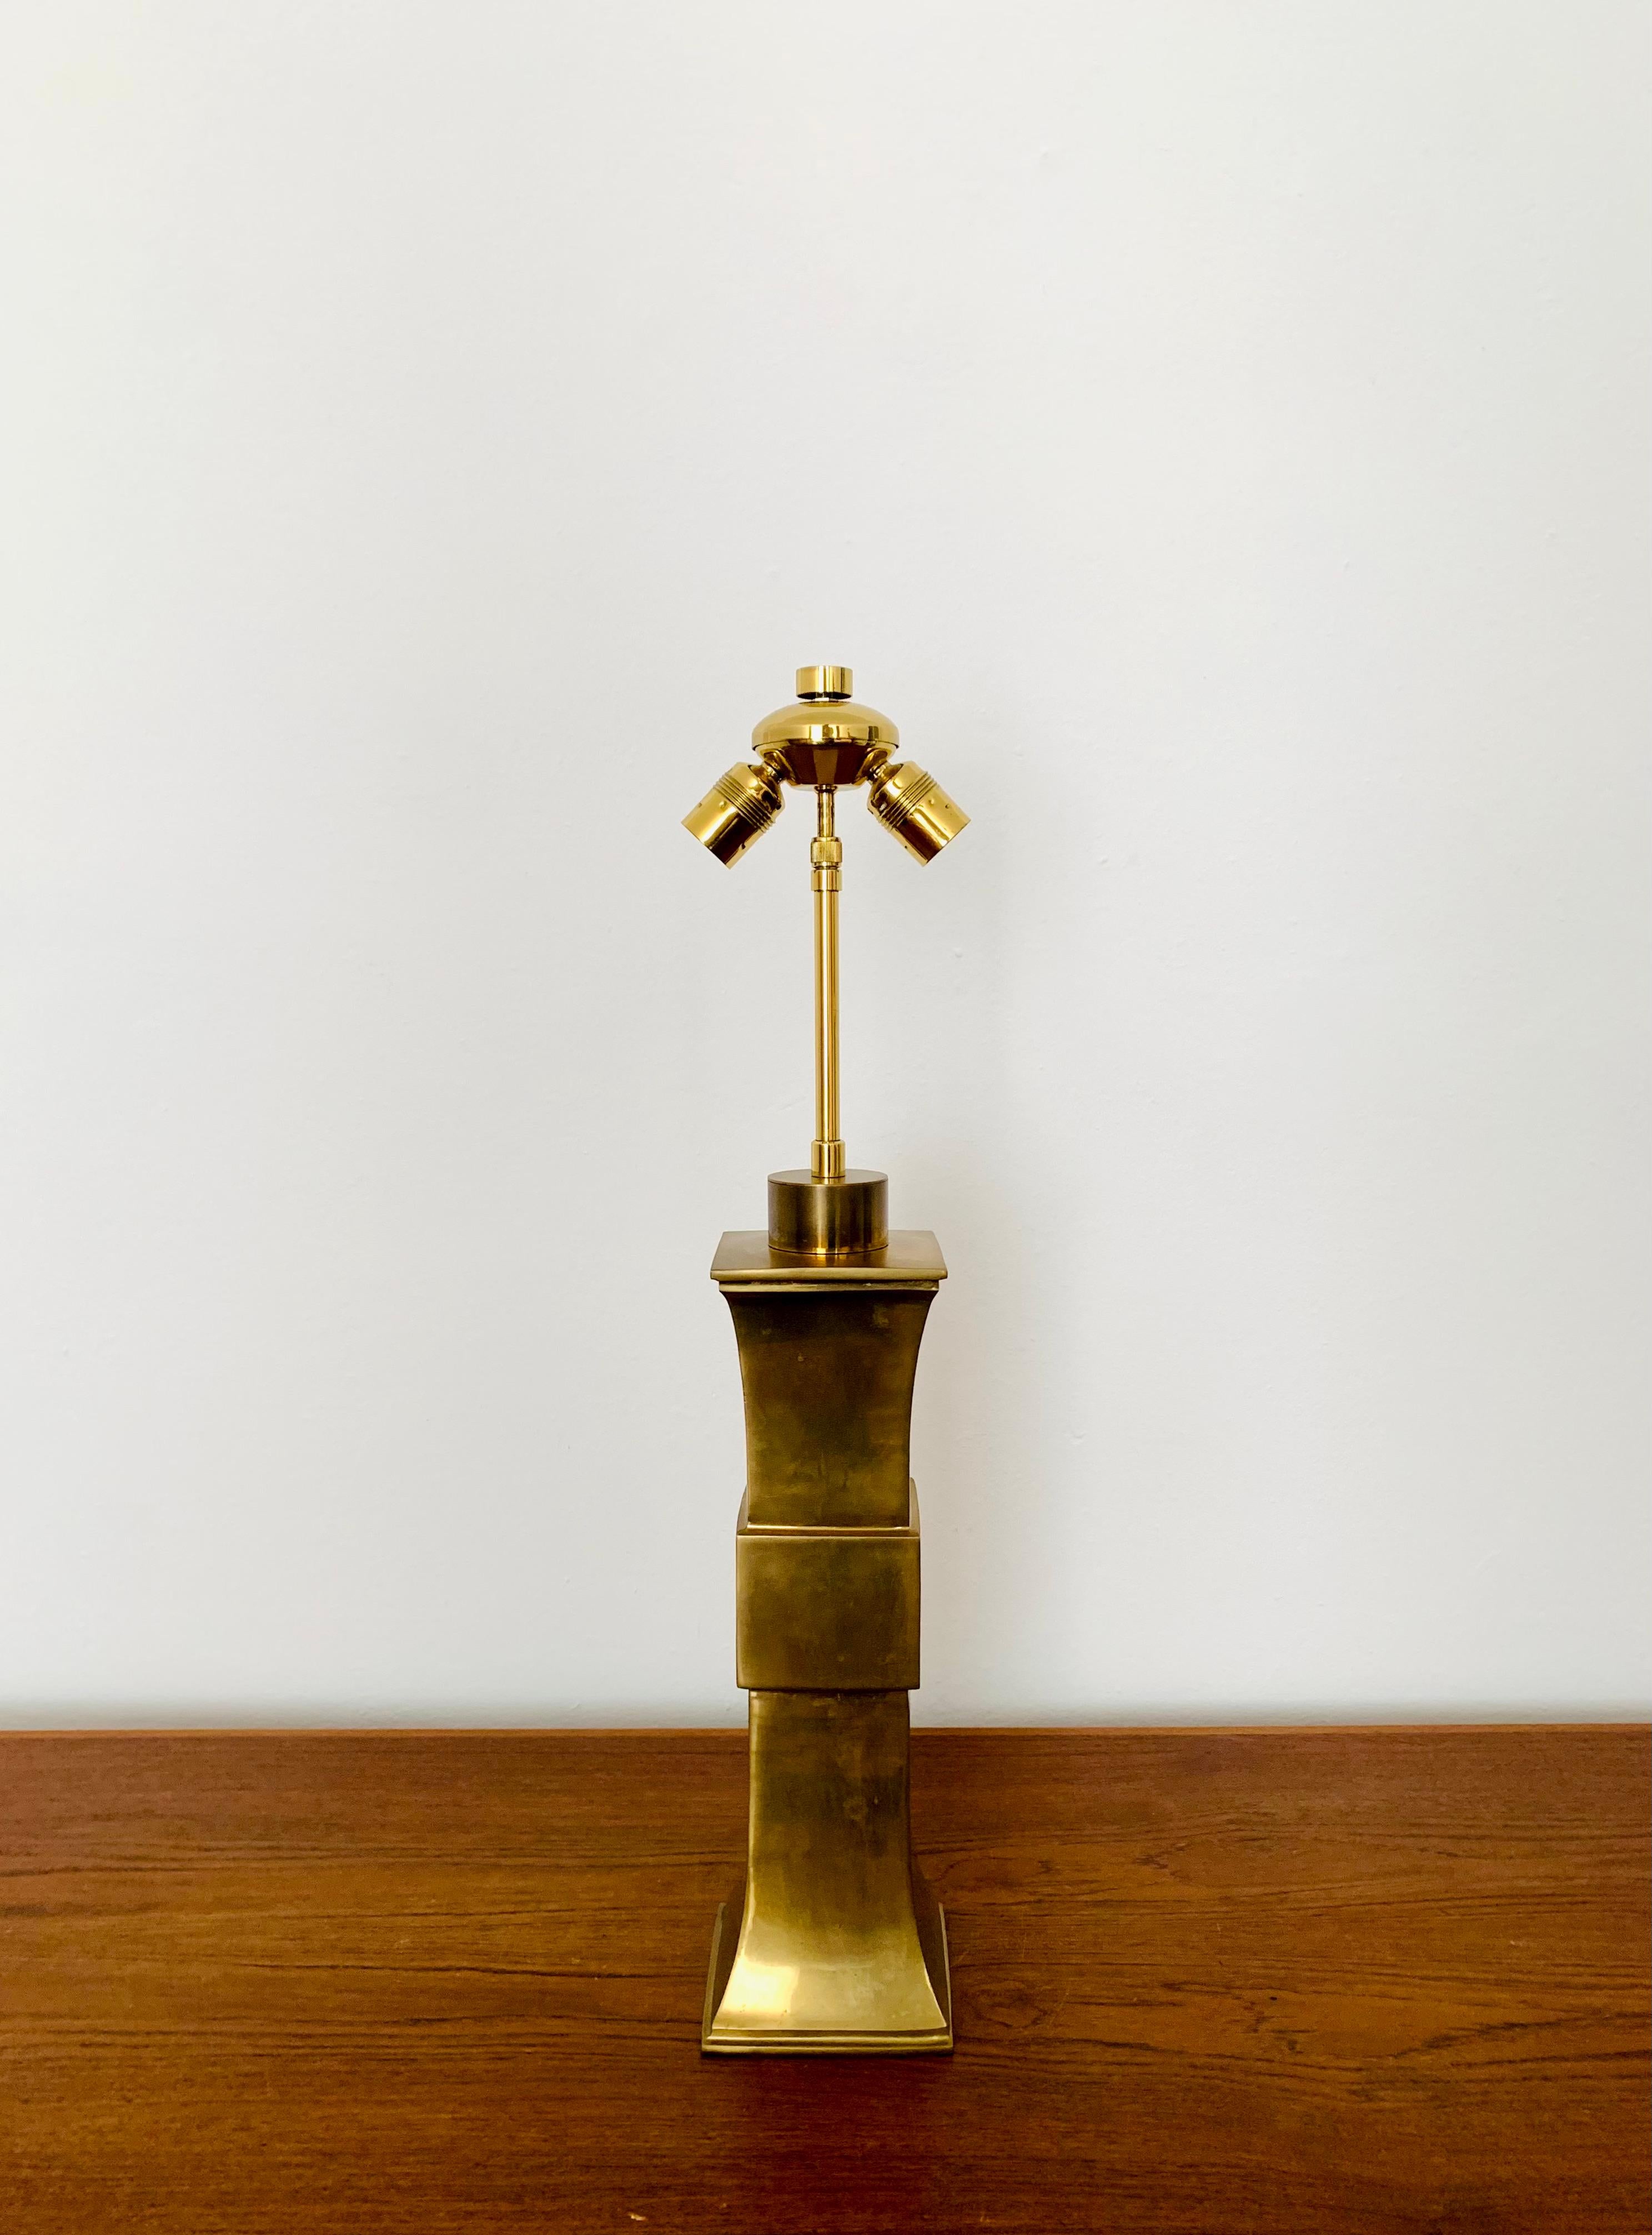 Beeindruckende Tischlampe aus Bronzeguss aus den 1960er Jahren.
Außergewöhnlich gelungenes Design und sehr hochwertige Verarbeitung.
Der Lampenkopf ist höhenverstellbar.
Eine sehr edle Lampe und eine Bereicherung für jedes Heim.

Der Lampenschirm